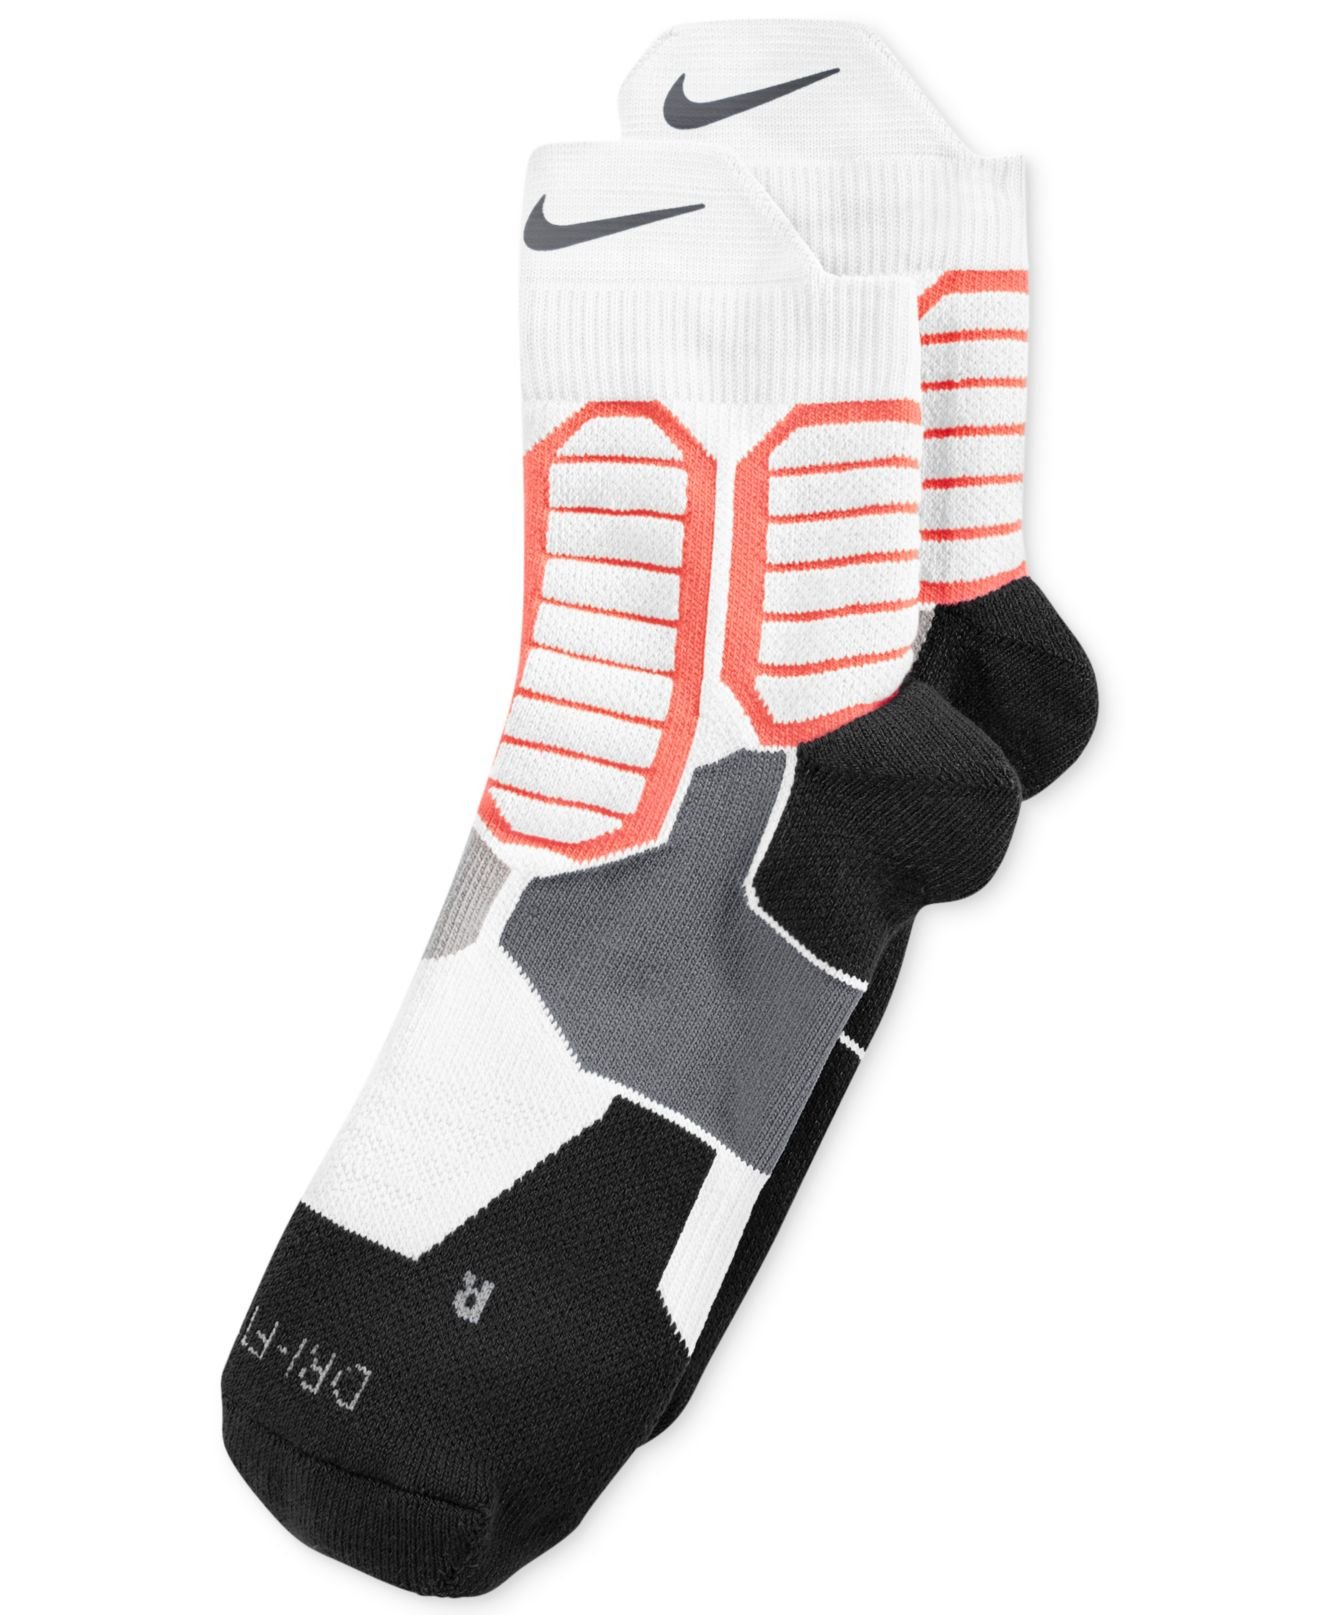 Nike Men's Hyper Elite Basketball High Quarter Socks for Men - Lyst